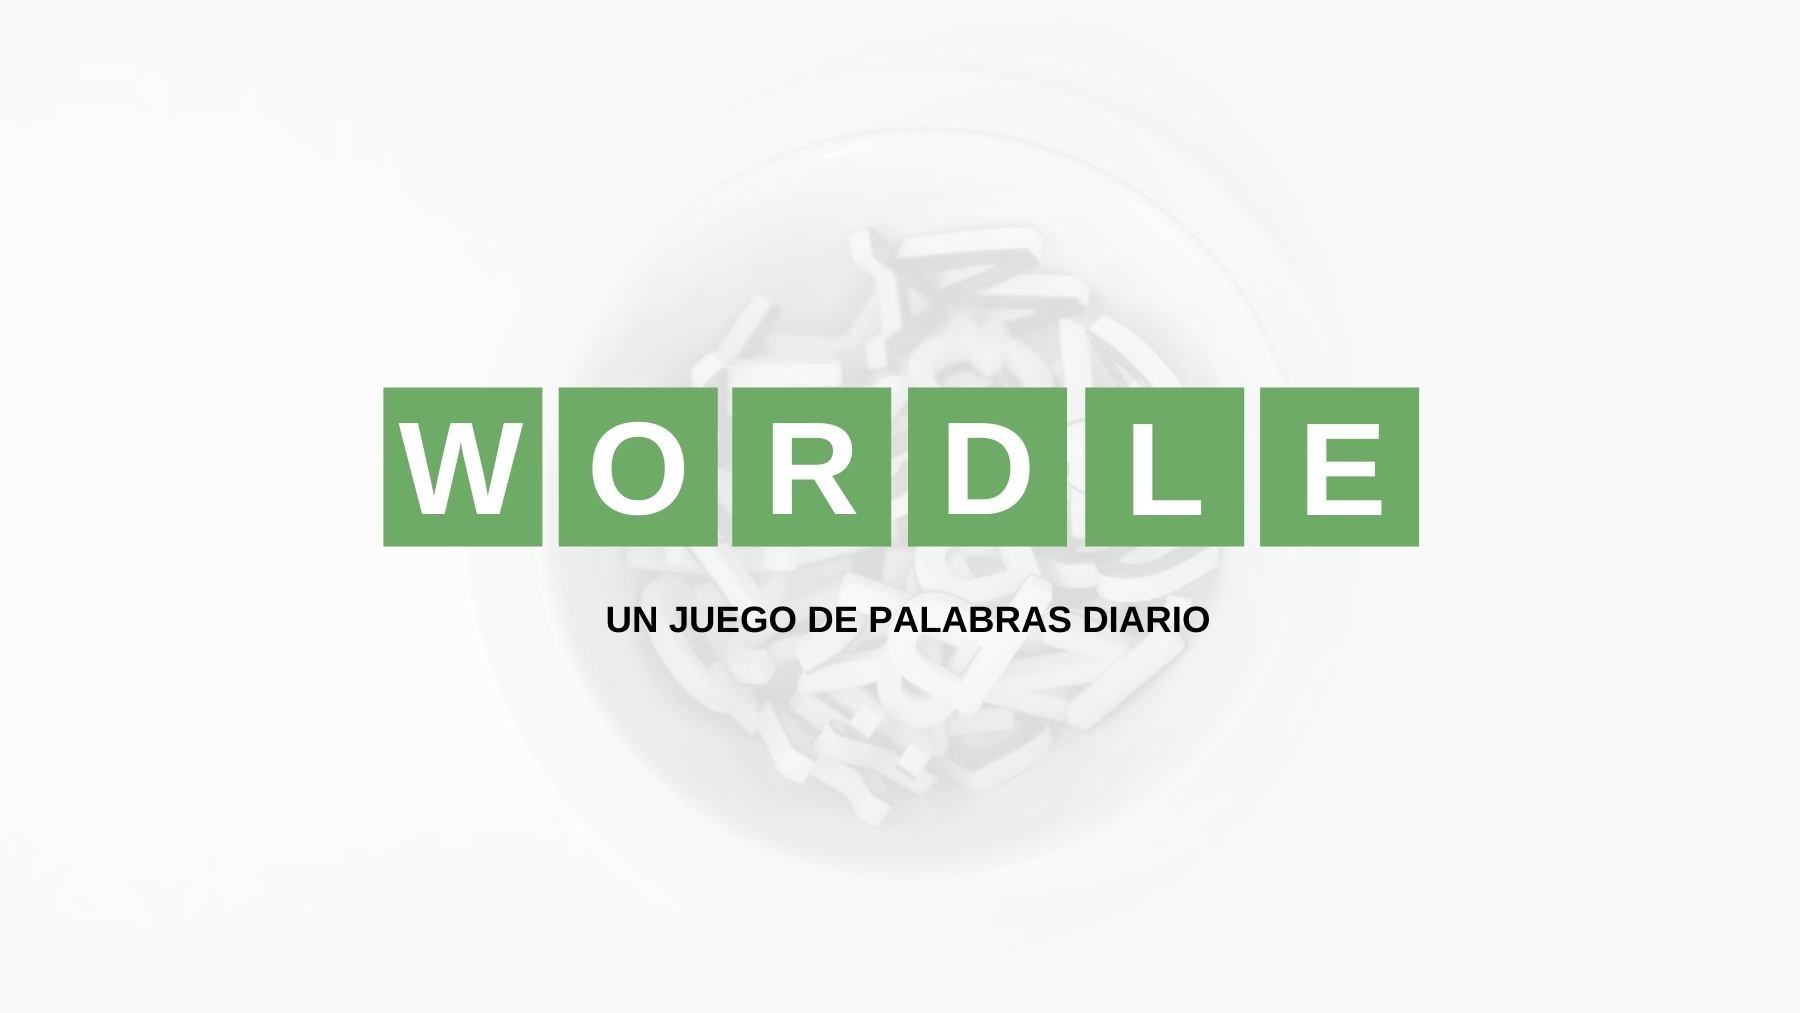 Solución palabra Wordle español, científico y con tildes hoy, martes 23 de agosto de 2022